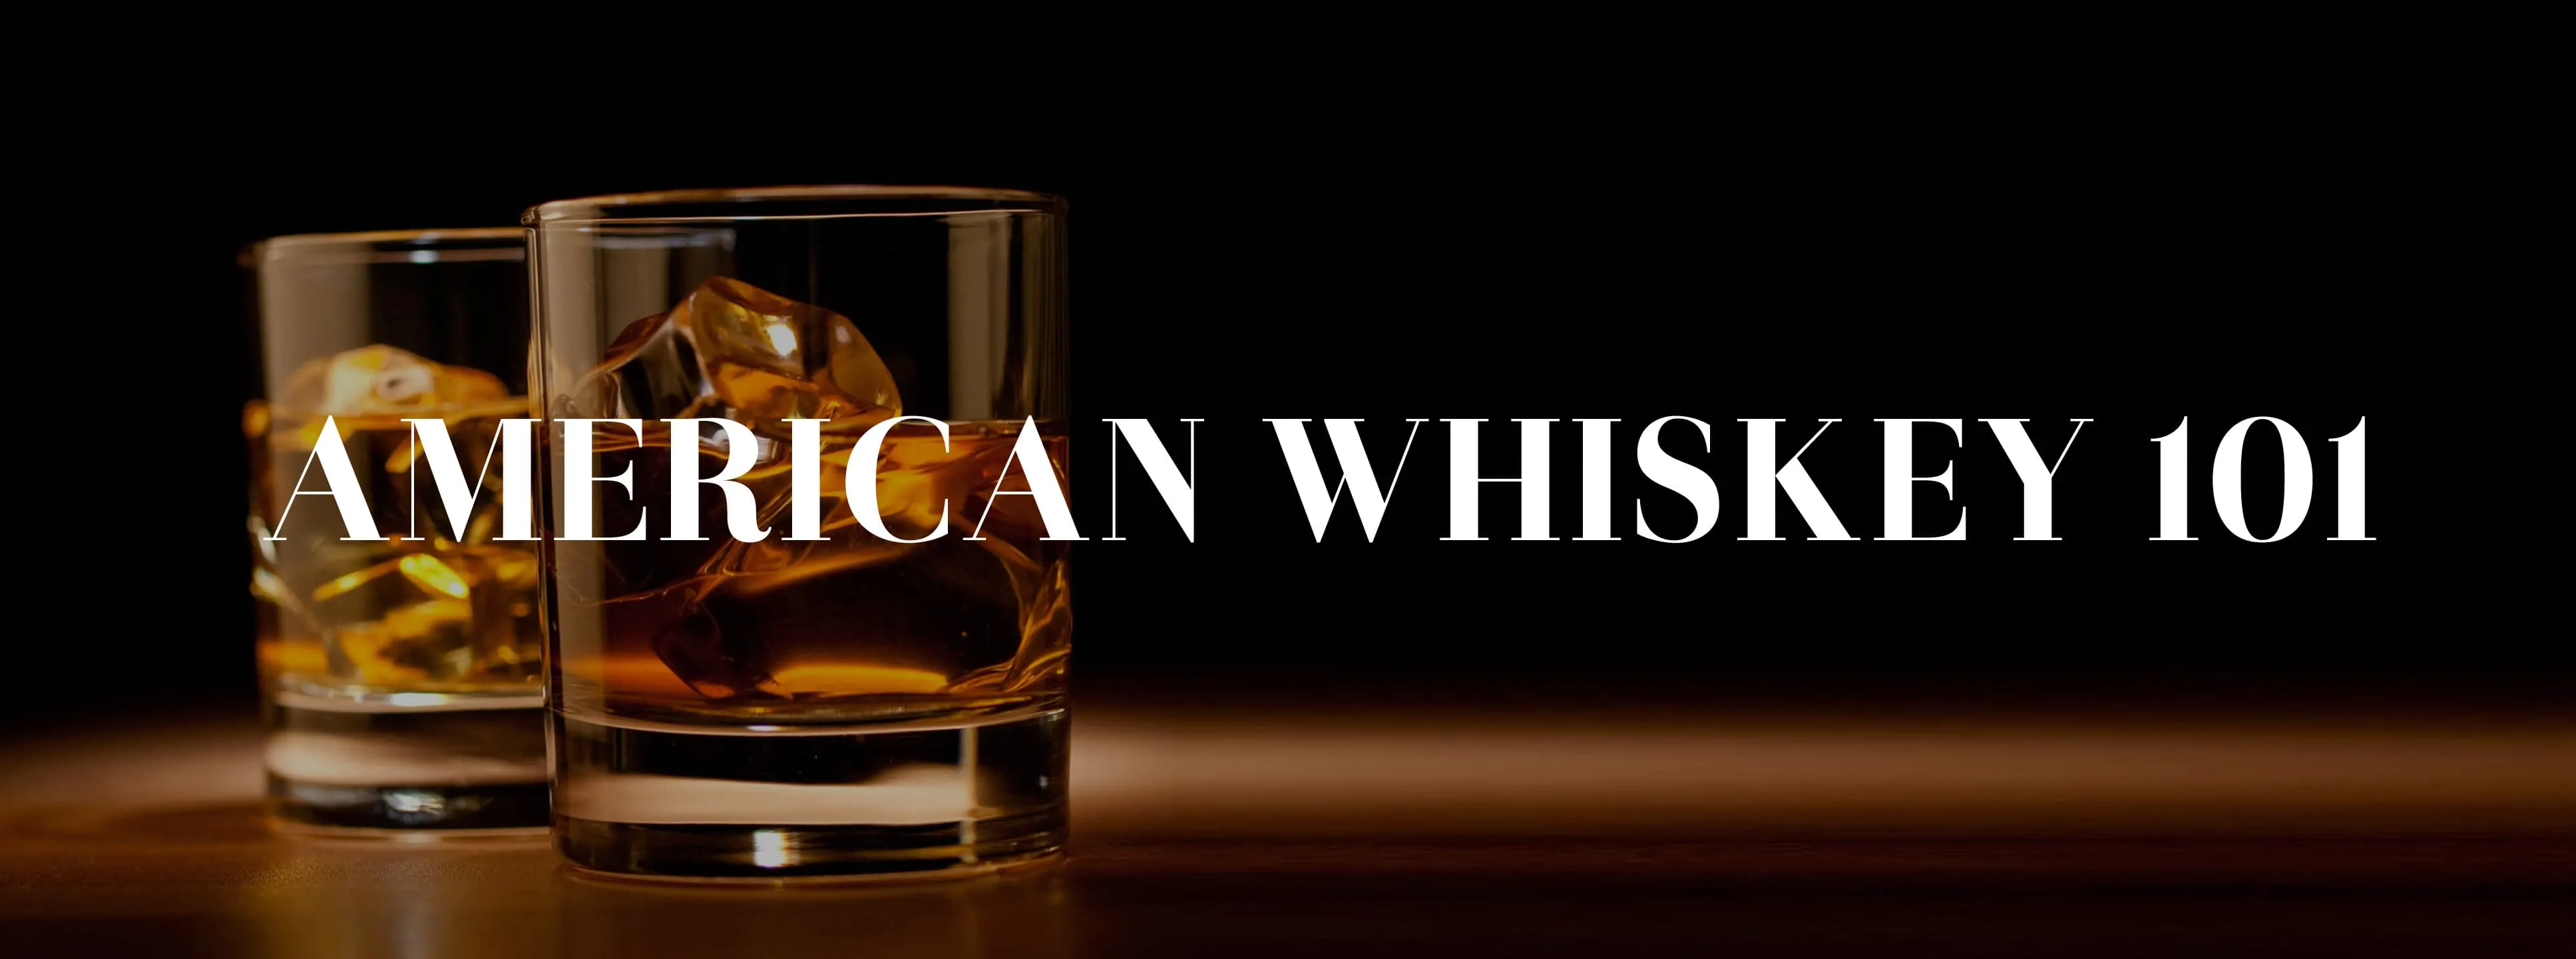 whiskey101